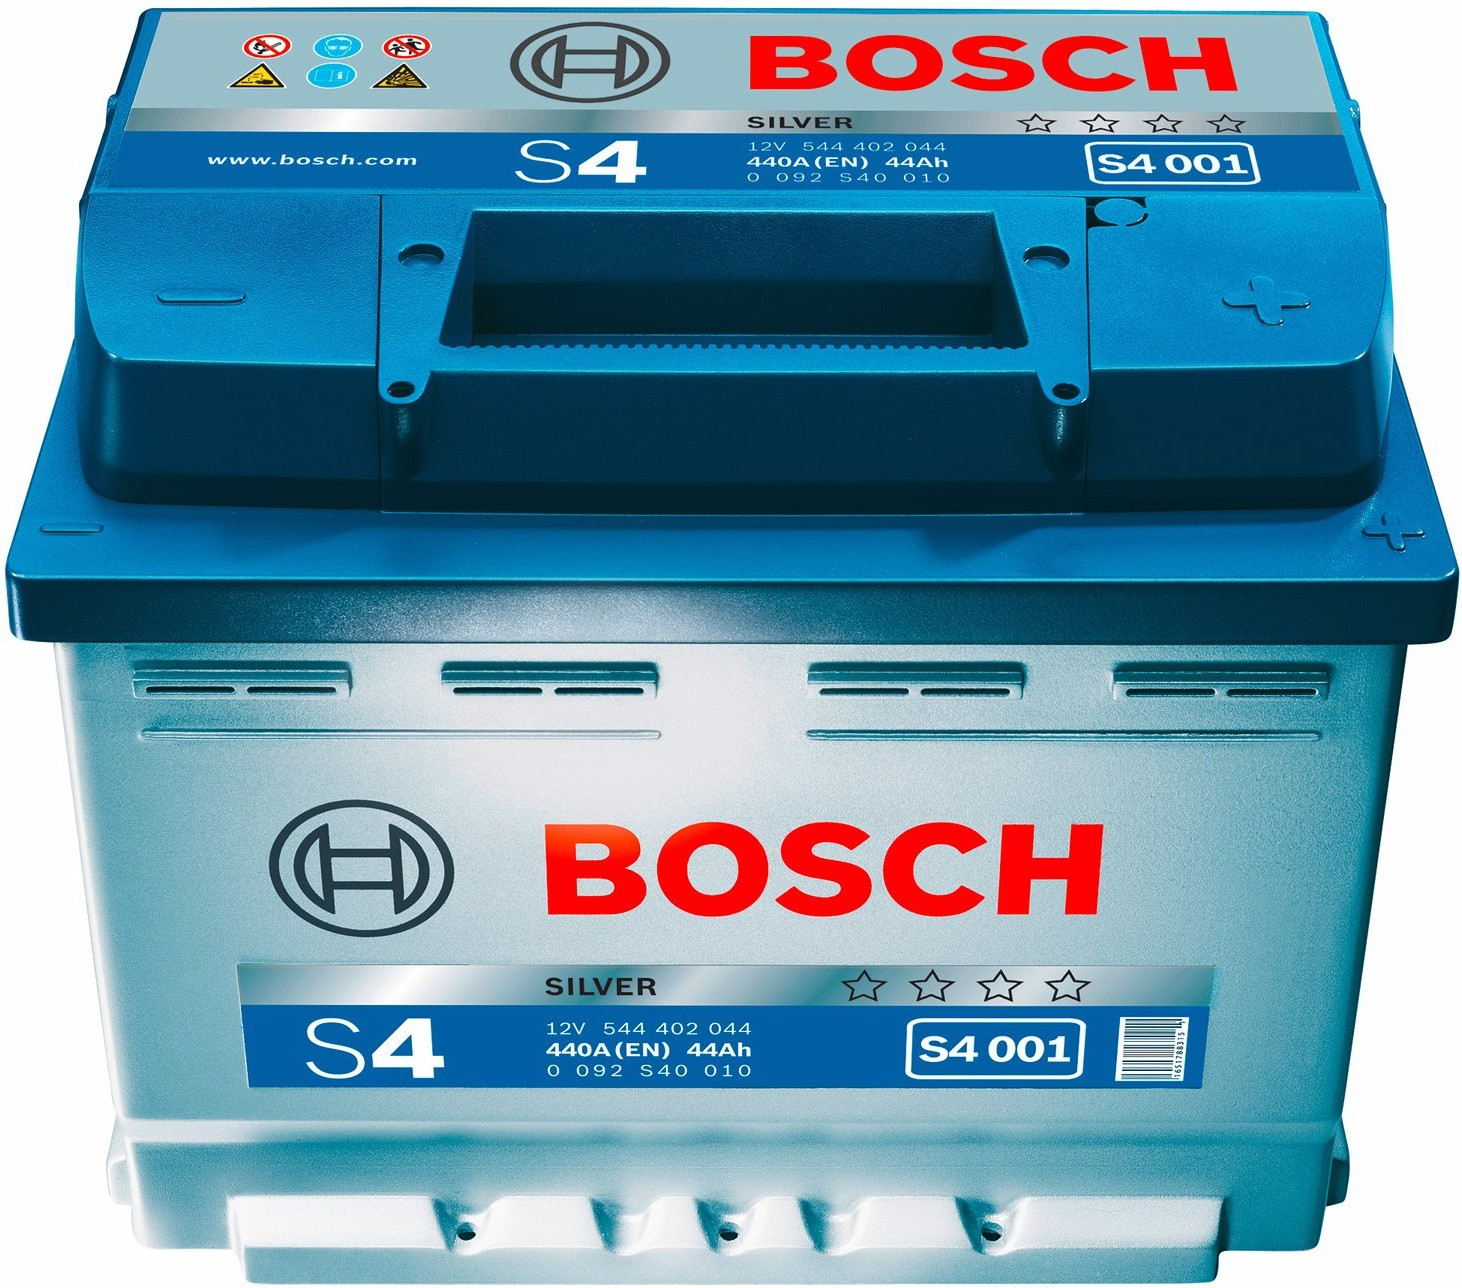 BOSCH Batterie Bosch S4005 60Ah 540A BOSCH pas cher 